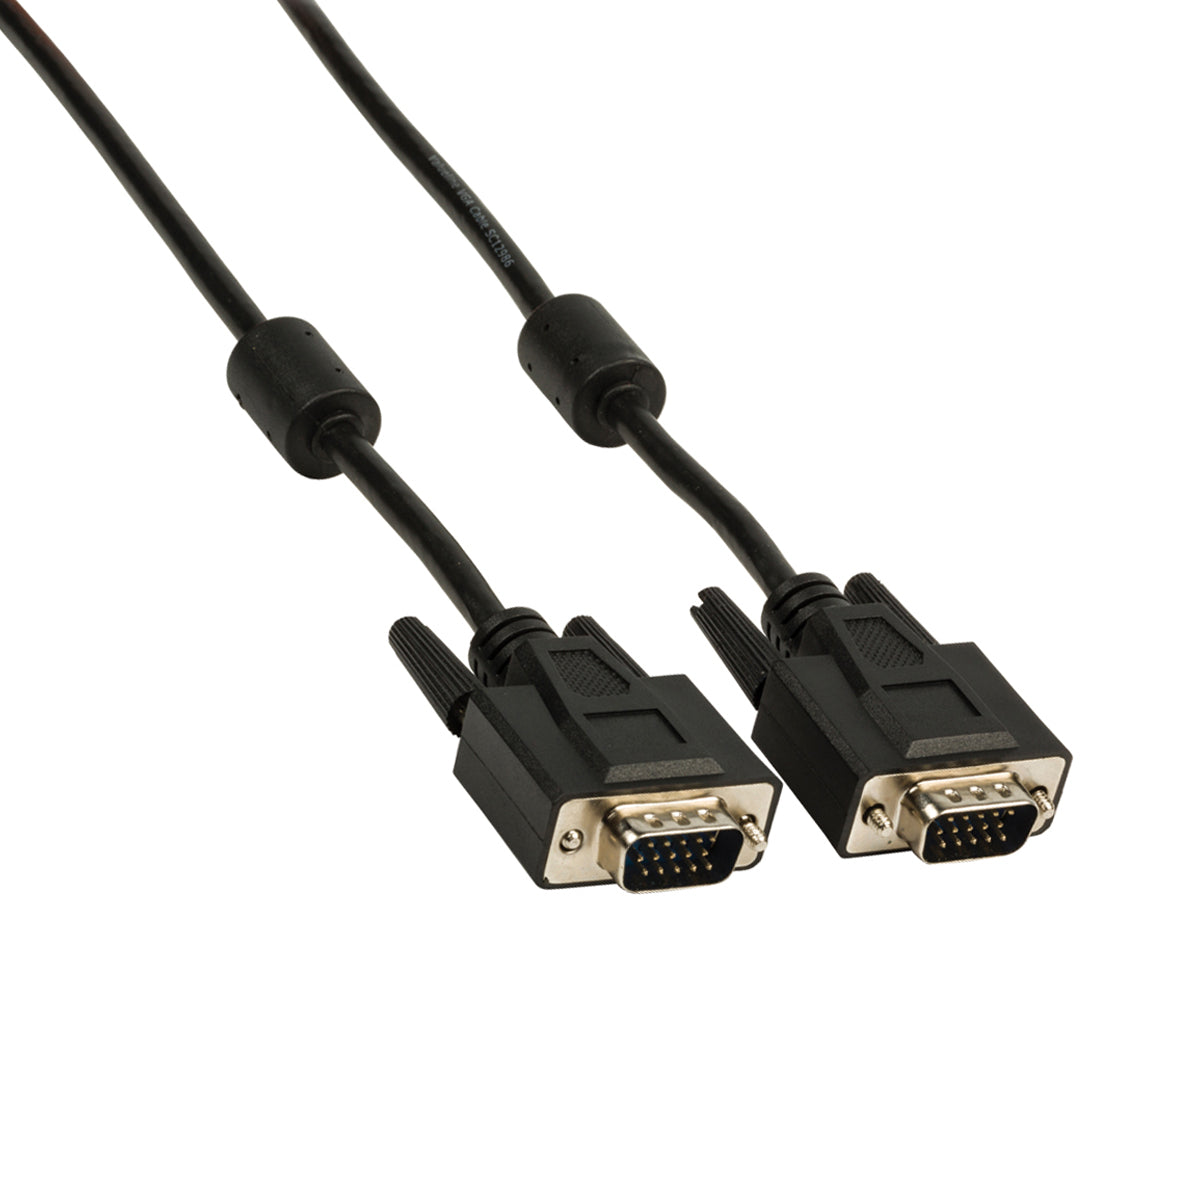 VGA Monitor Kabel / 3 Meter / HighEnd / Kupfer / 2x Stecker / VLCP59000B30